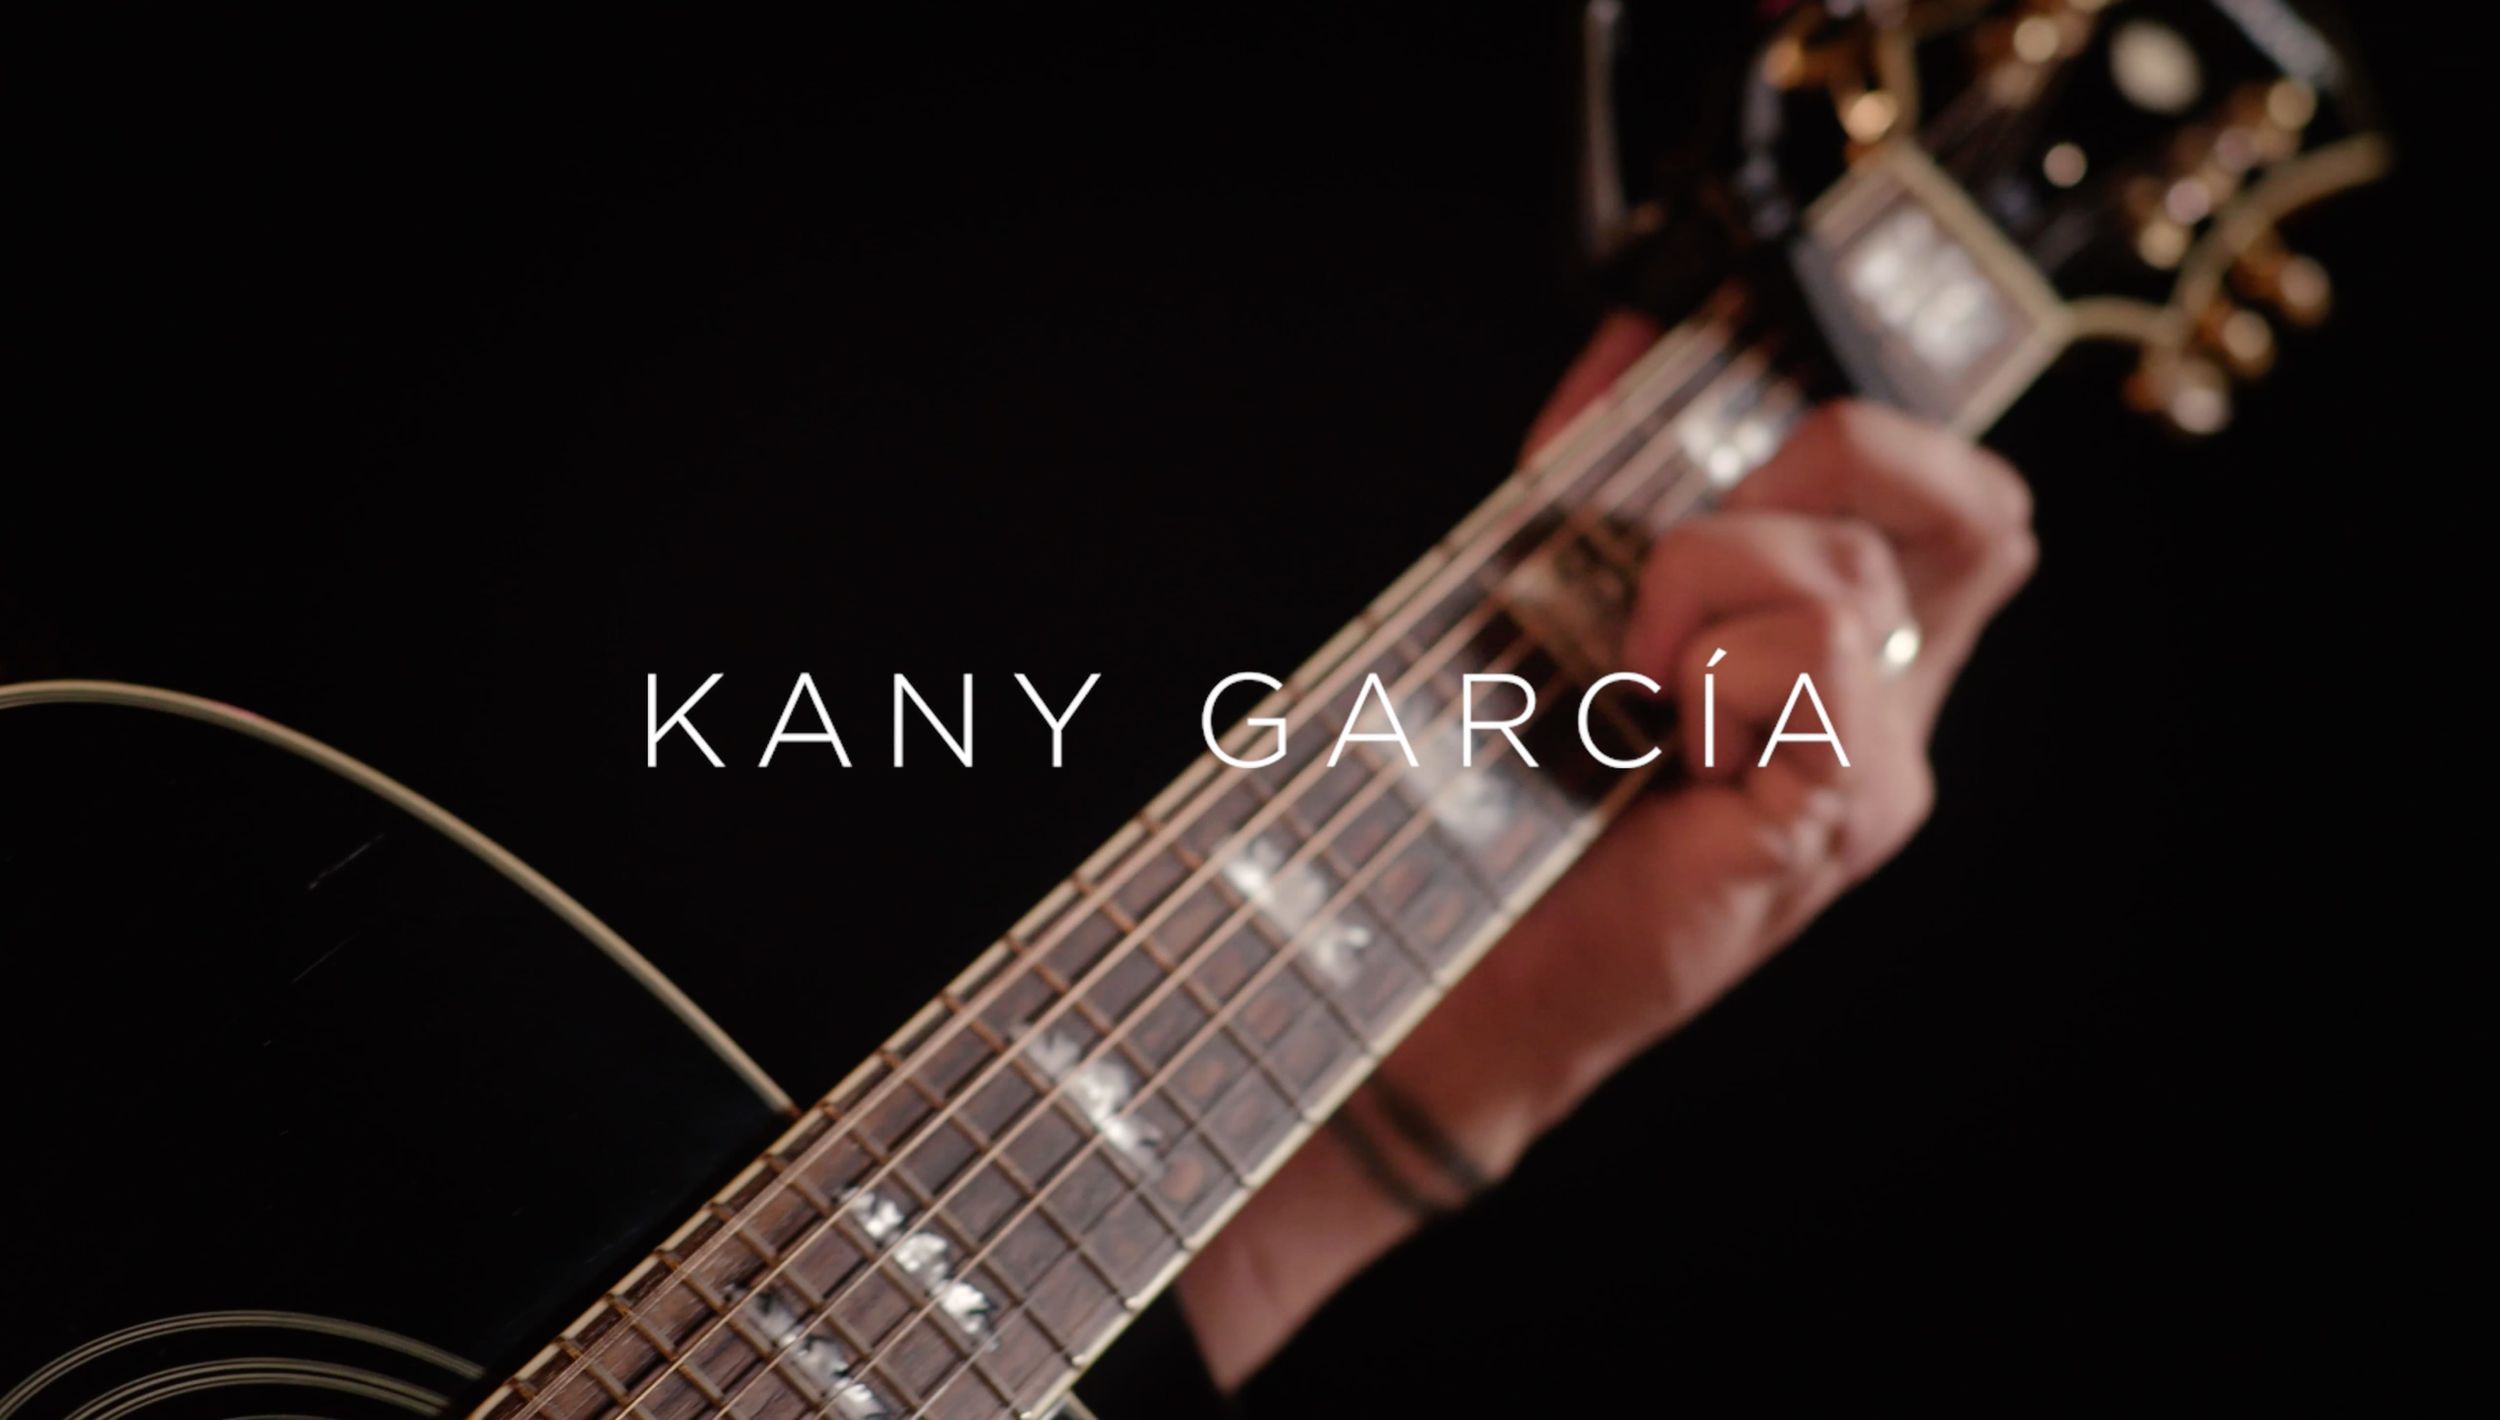 Kany Garcia interprétant sa chanson 'Muero' pour notre nouvelle LA Session.